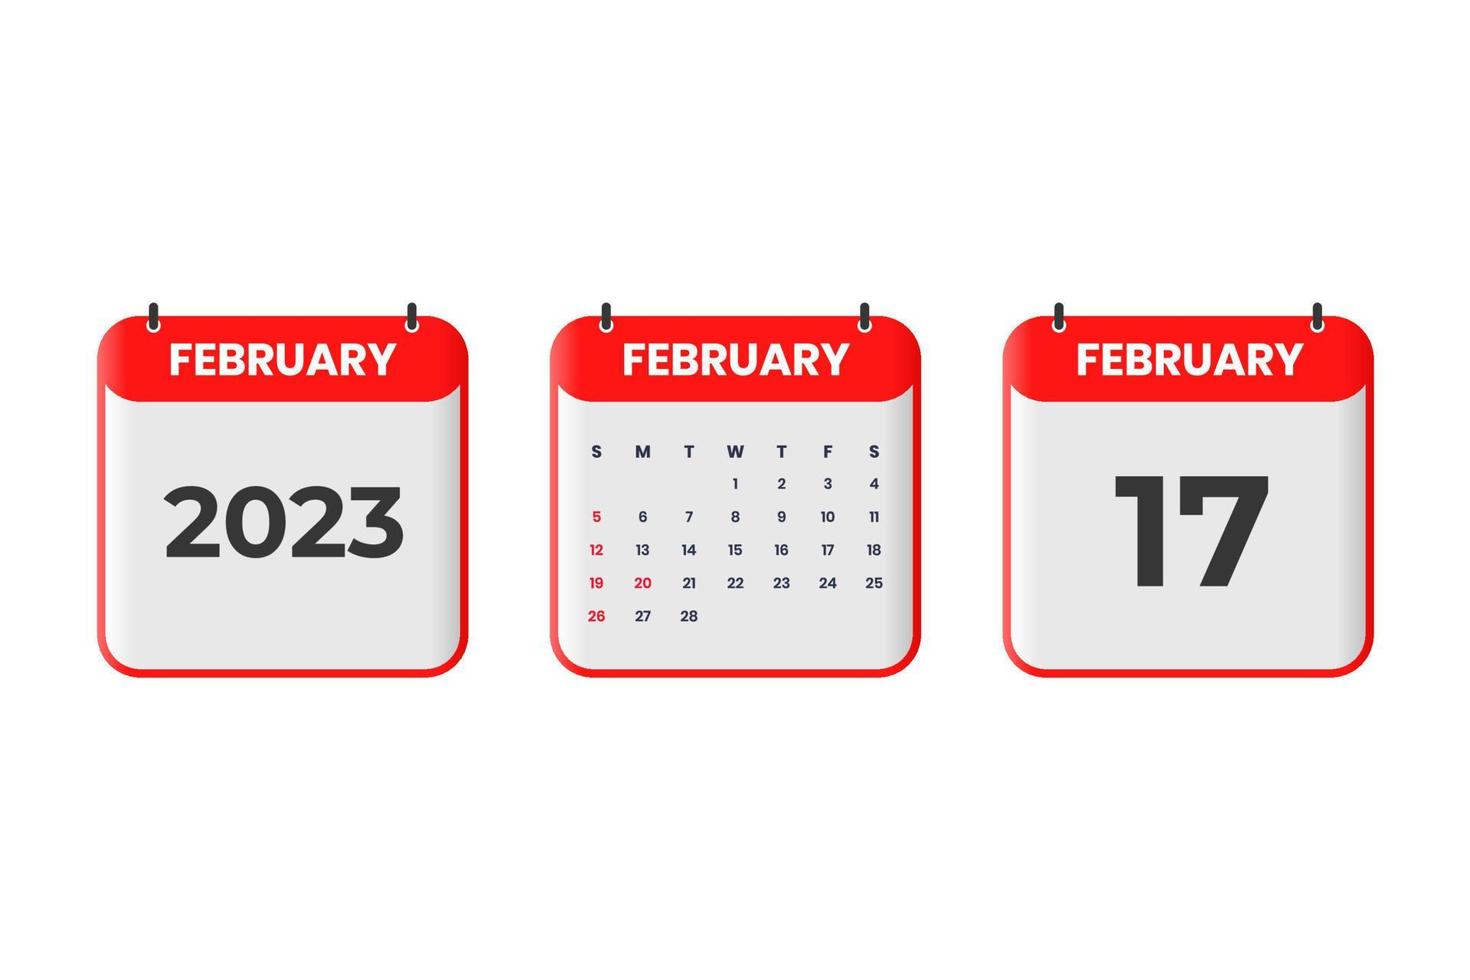 februari 2023 kalender design. 17:e februari 2023 kalender ikon för schema, utnämning, Viktig datum begrepp vektor